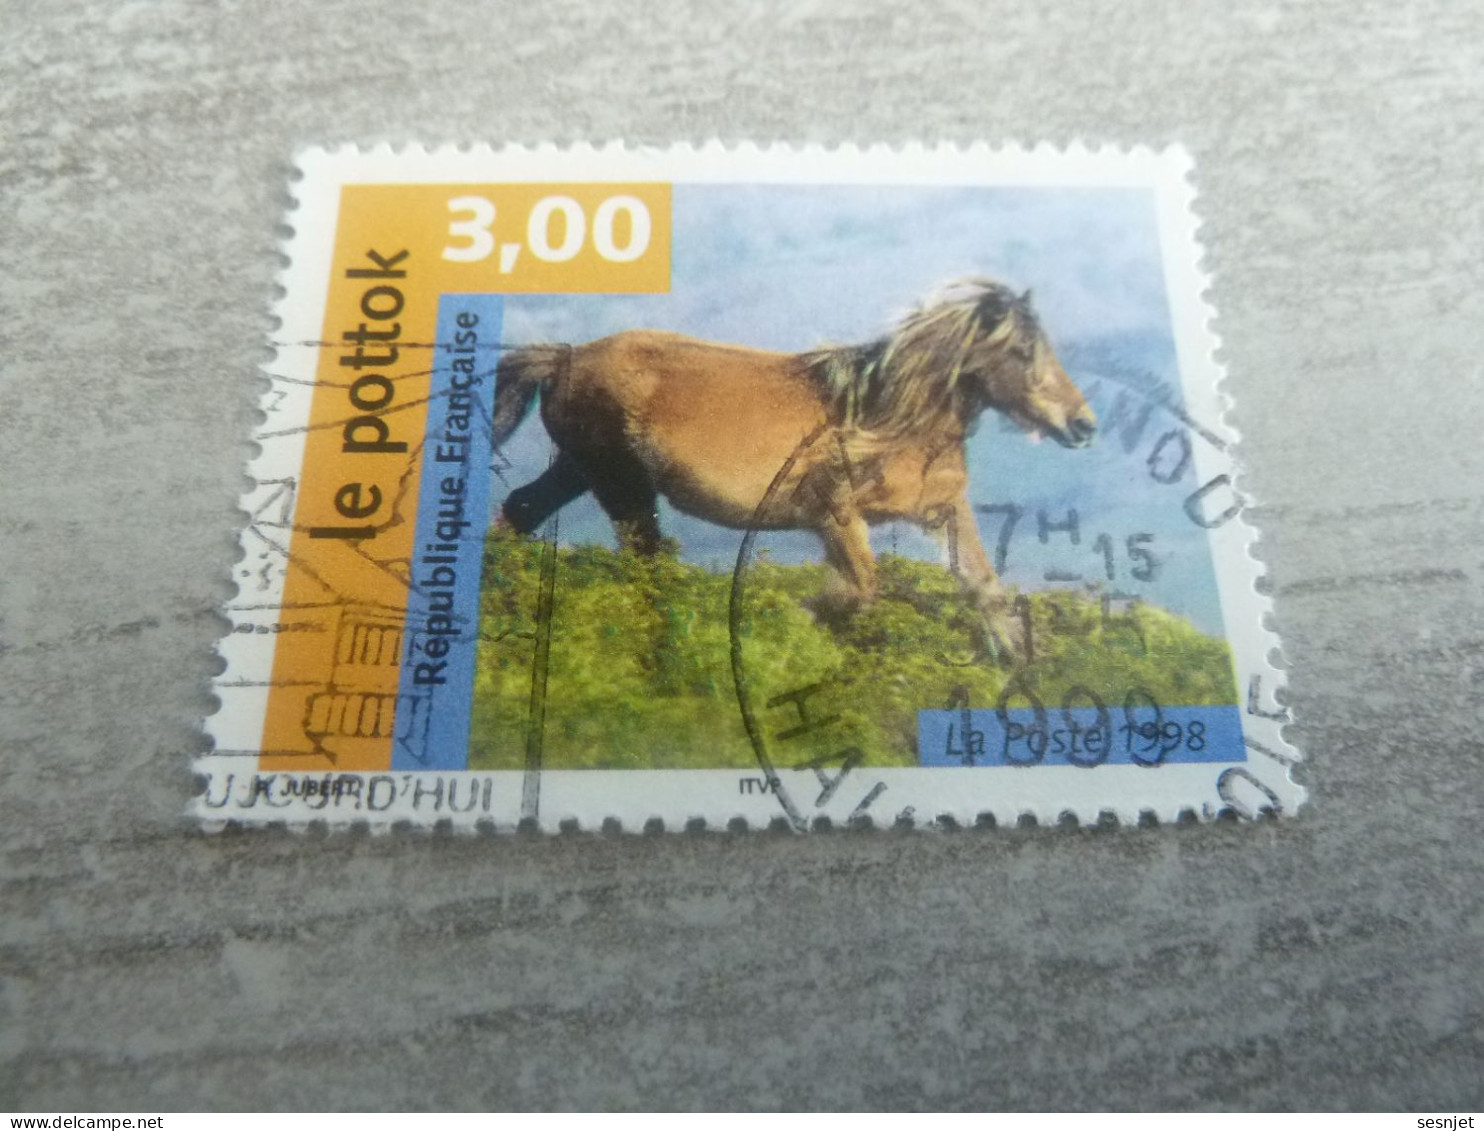 Le Pottok - Chevaux - 3f. - Yt 3184 - Multicolore - Oblitéré - Année 1998 - - Horses